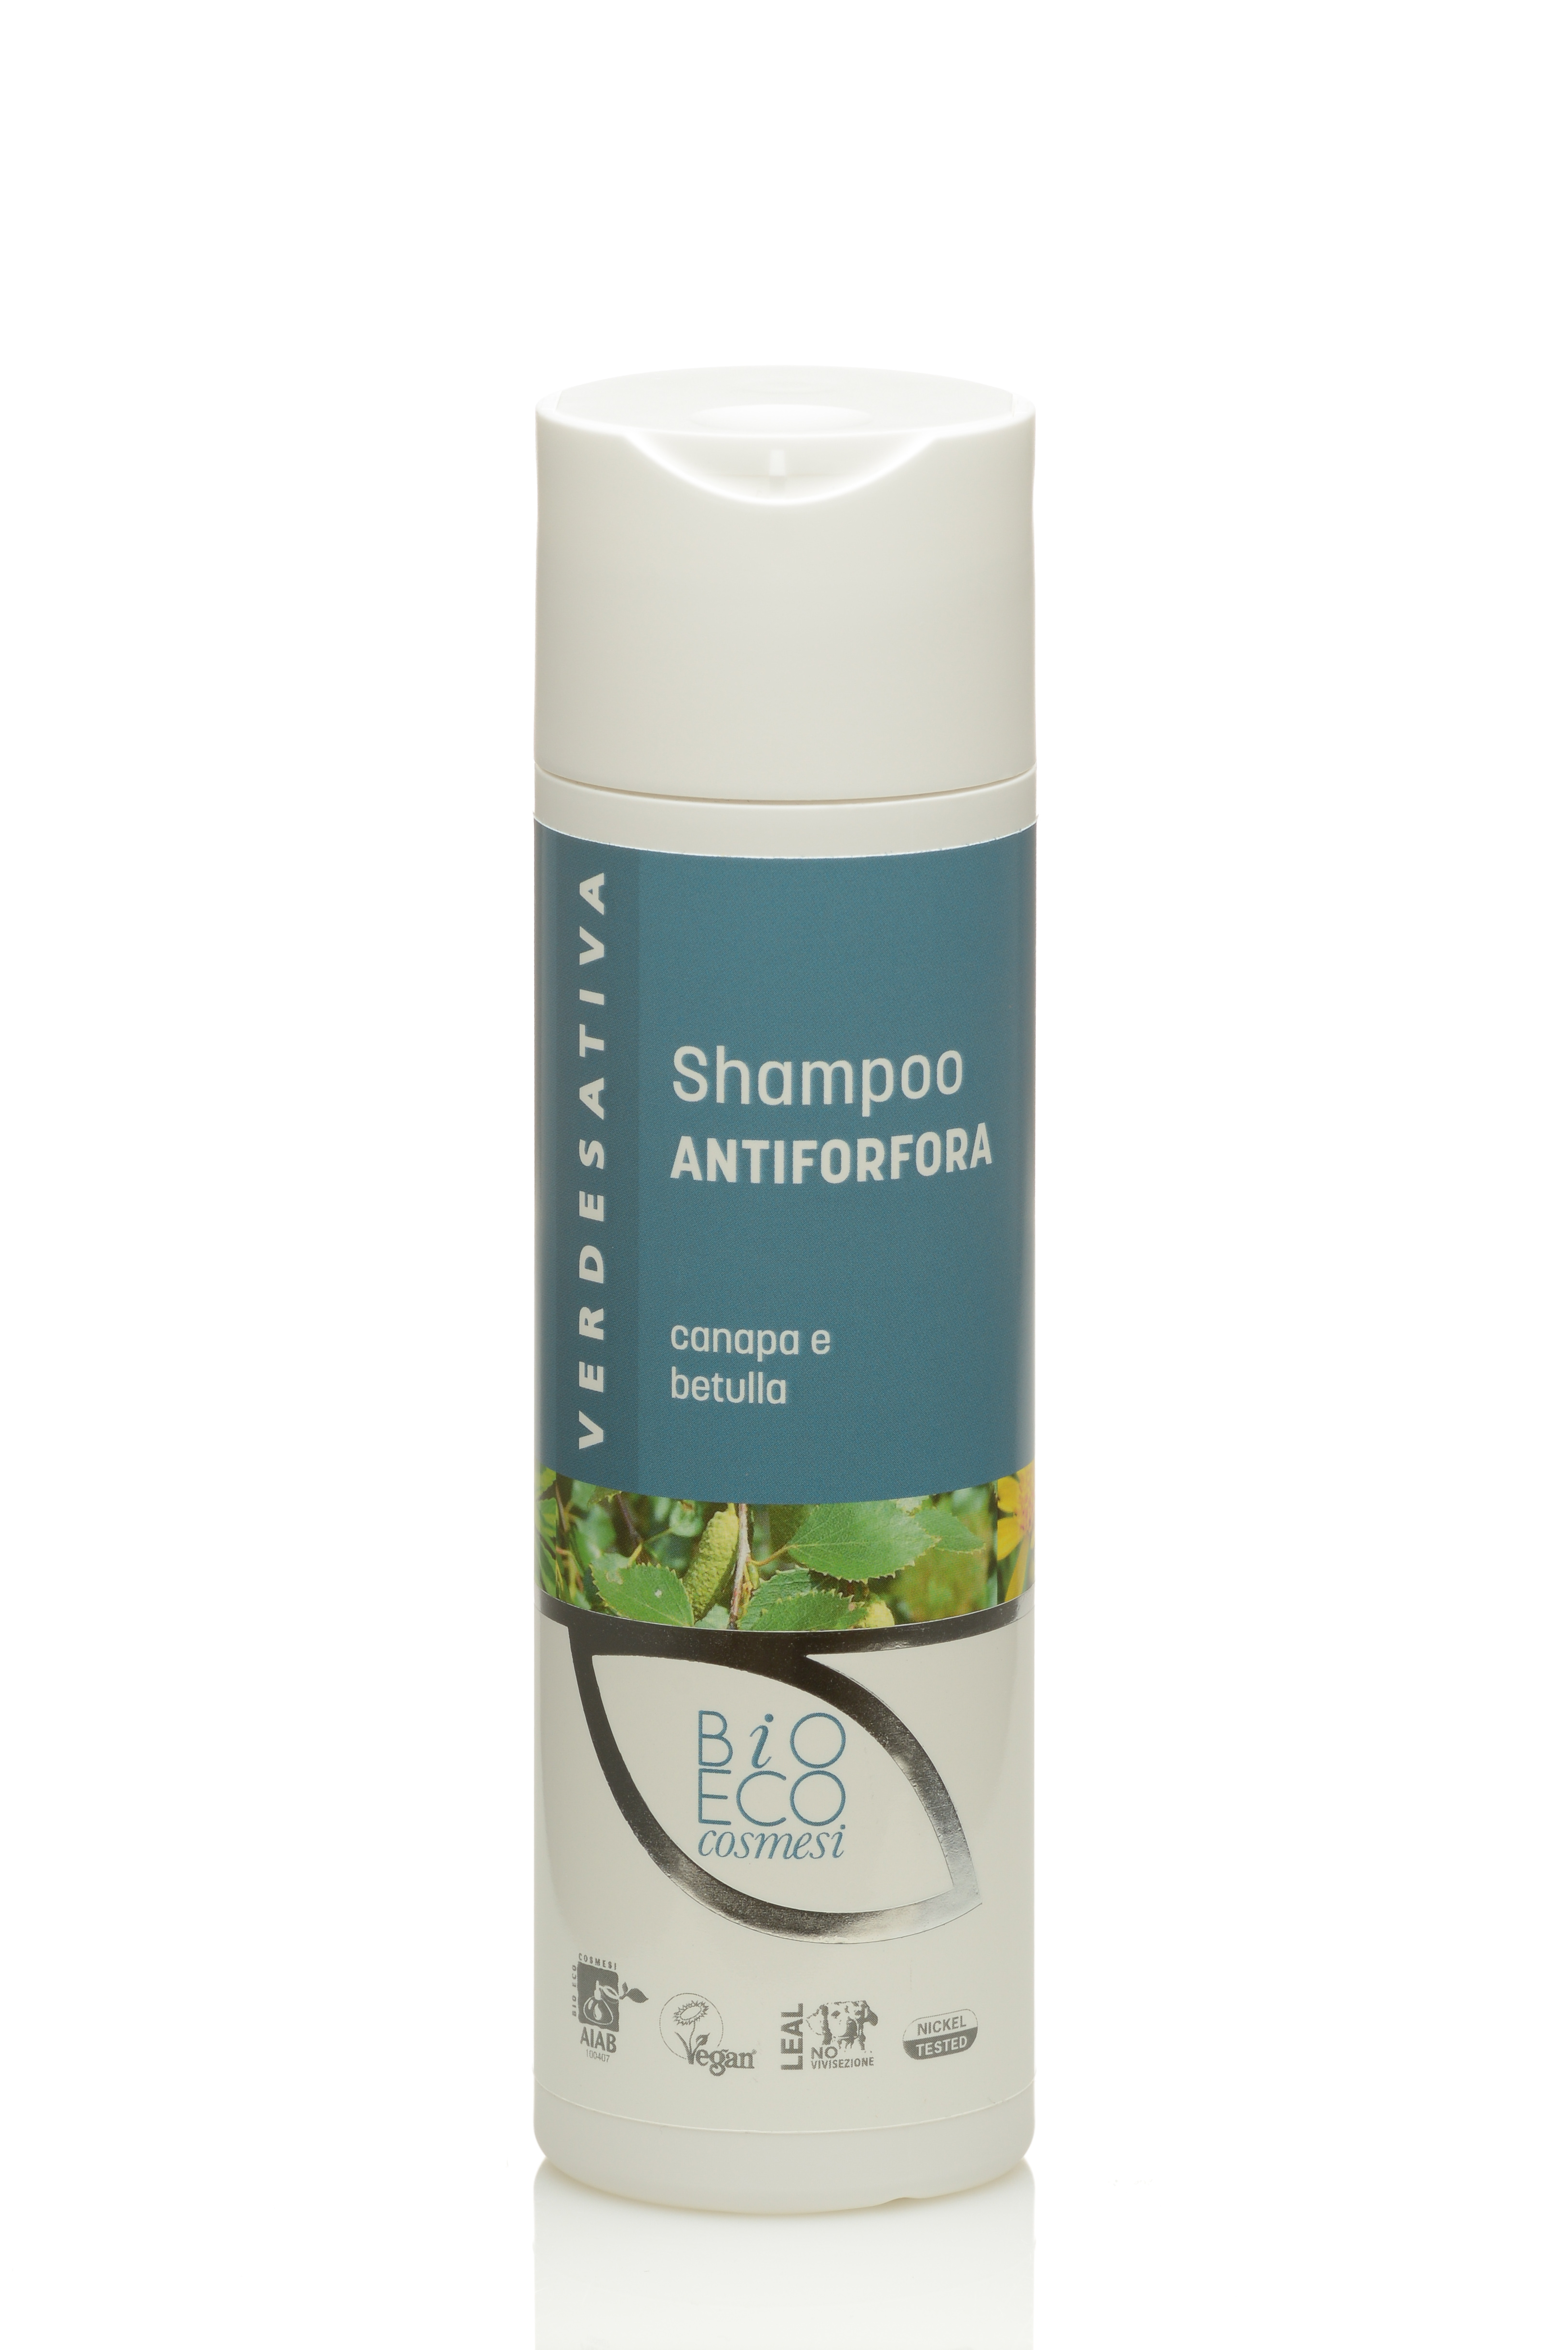 Shampoo Antiforfora con canapa e betulla 100% naturale e bio degradabile - 200ml